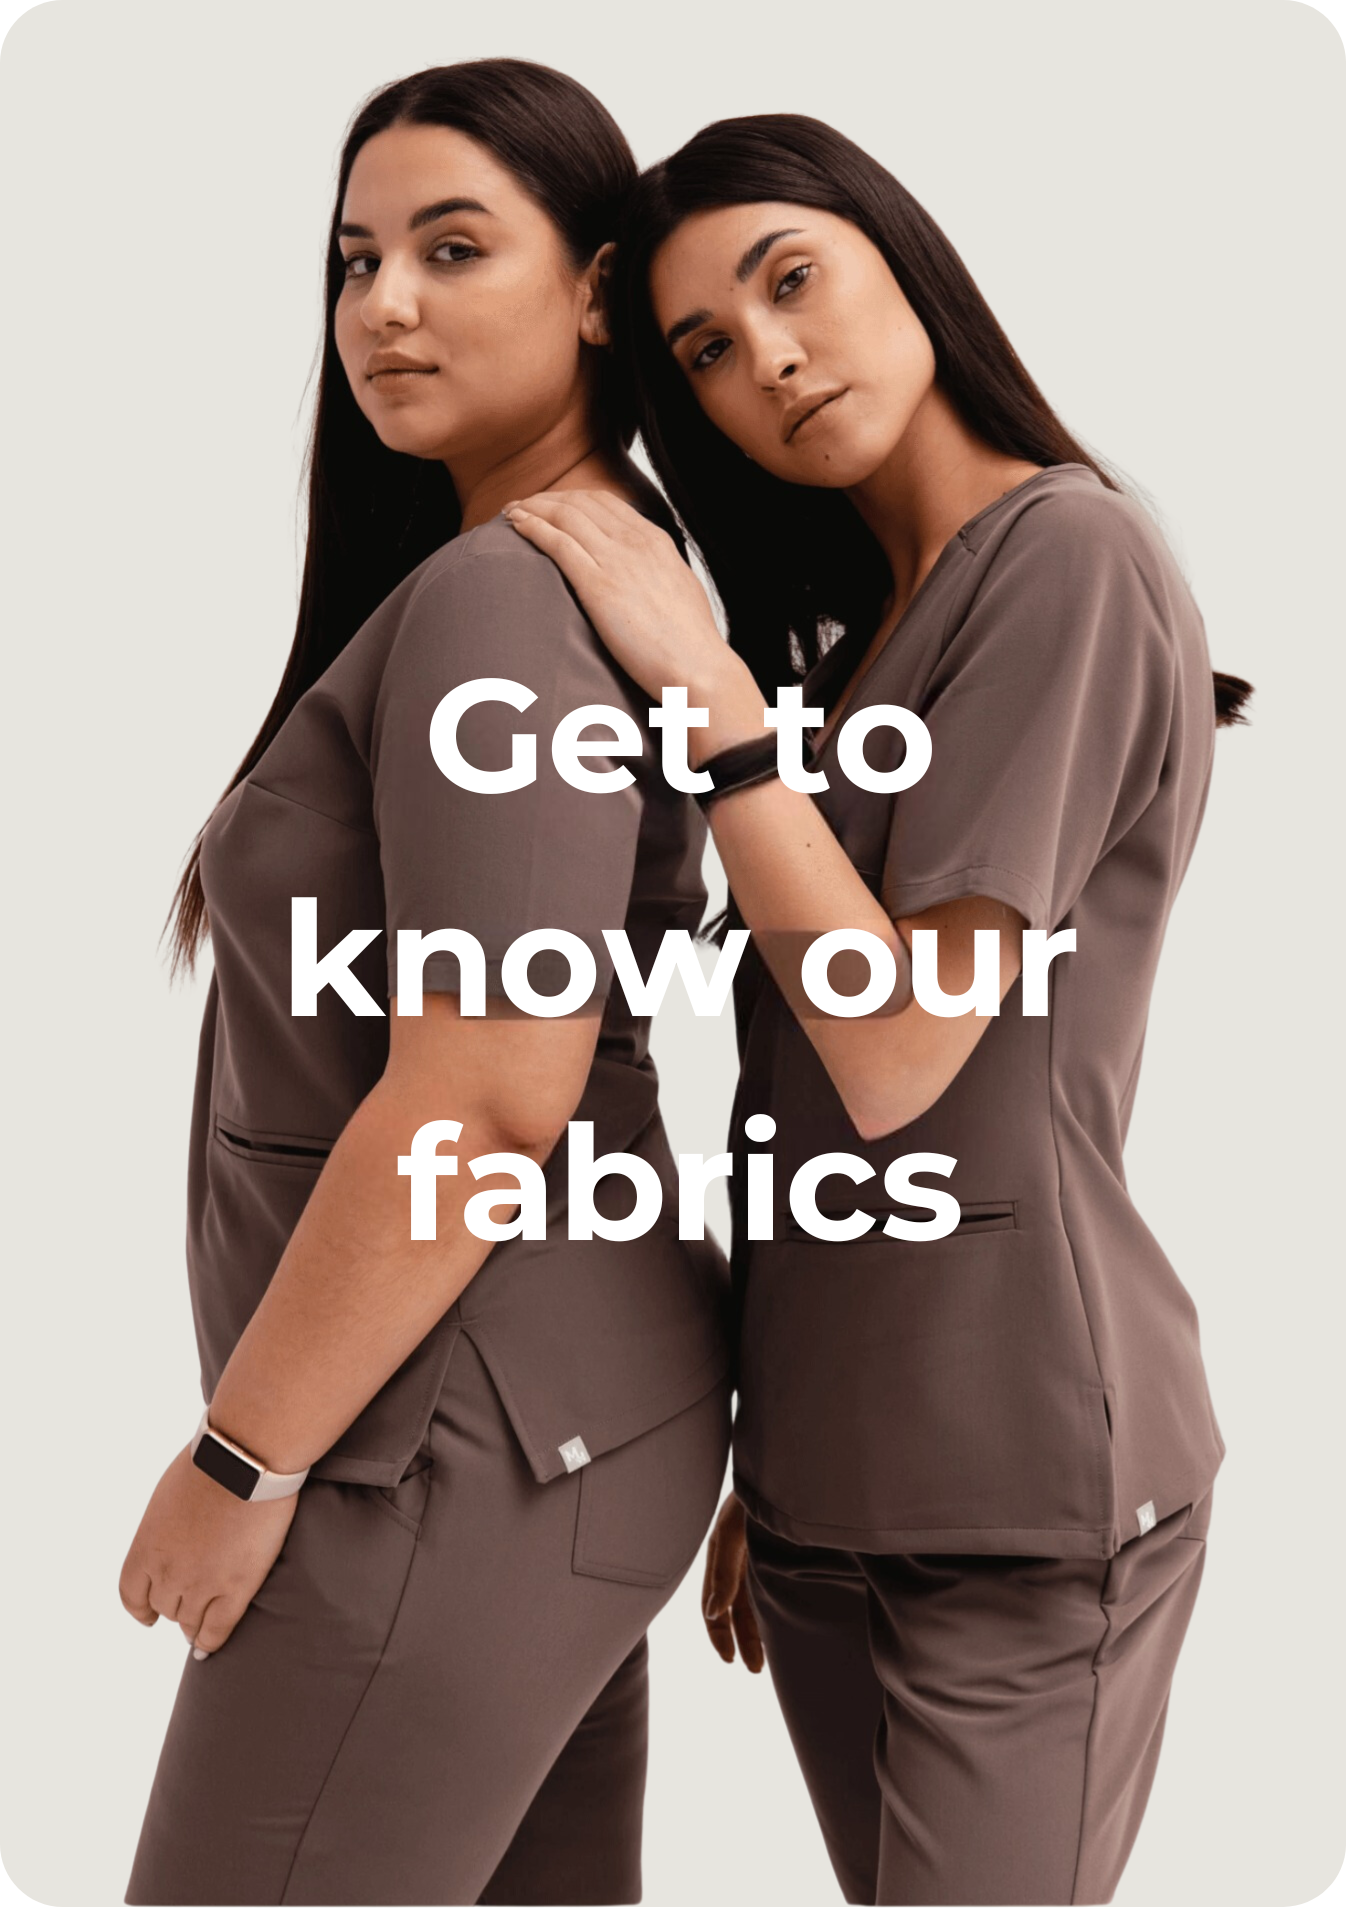 Discover our fabrics